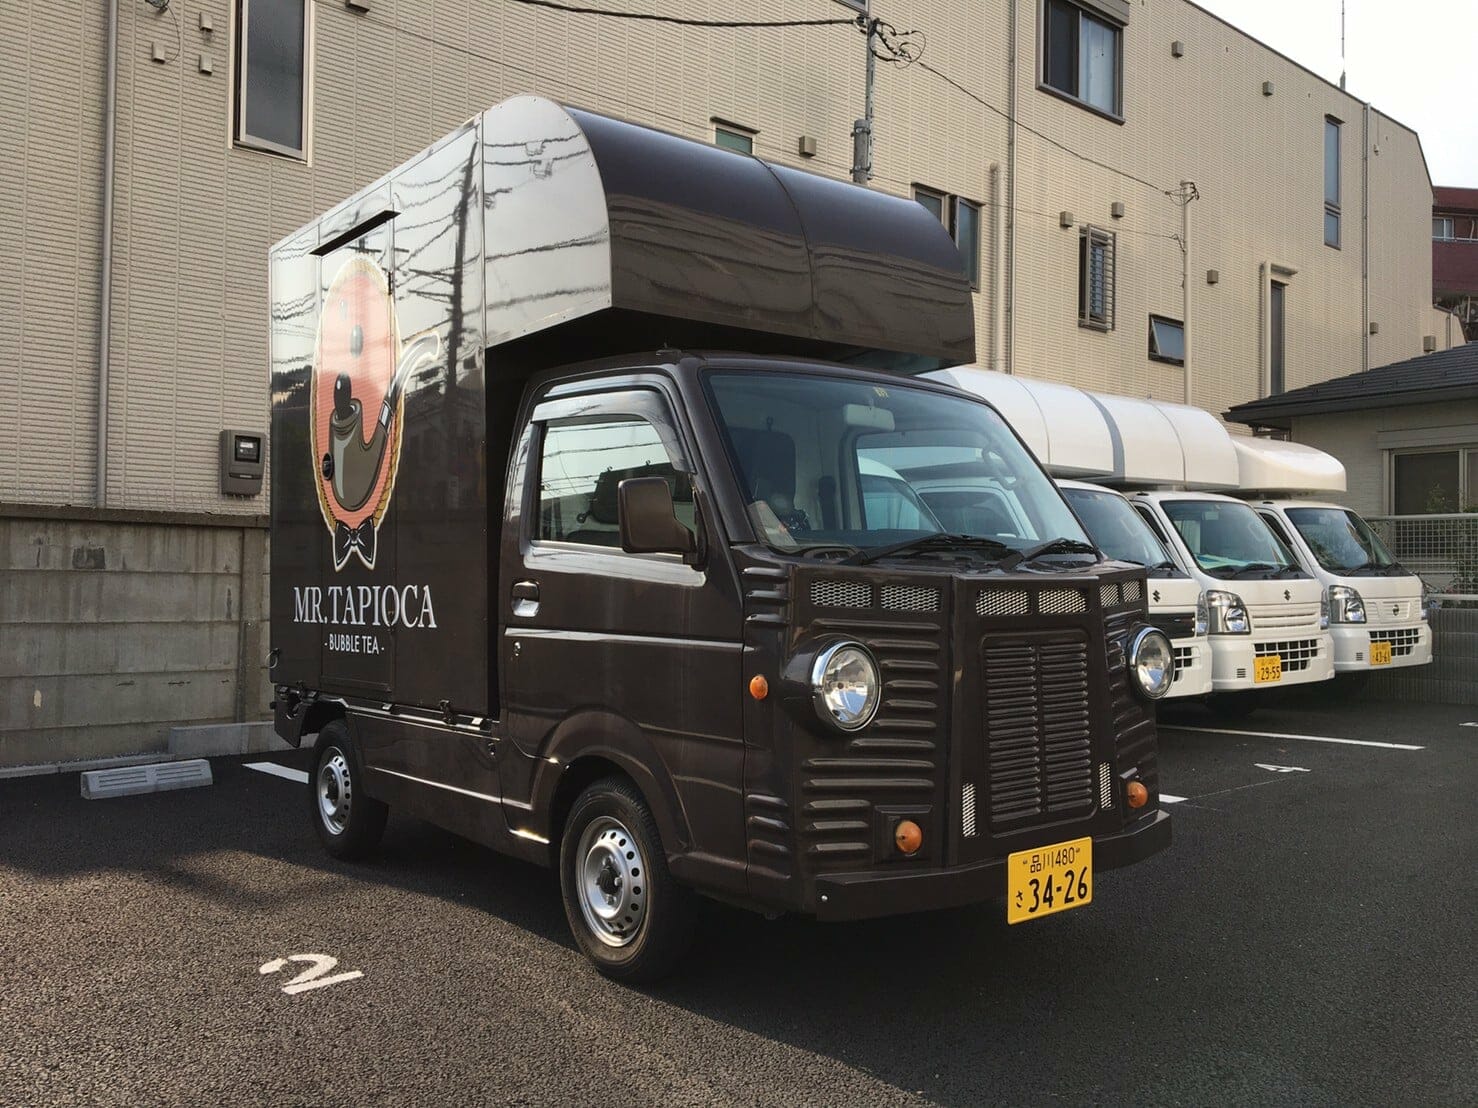 軽トラック かわいいsuzuki キャリイの茶色キッチンカー 移動販売車 キッチンカー の製作 フードトラックカンパニー 公式